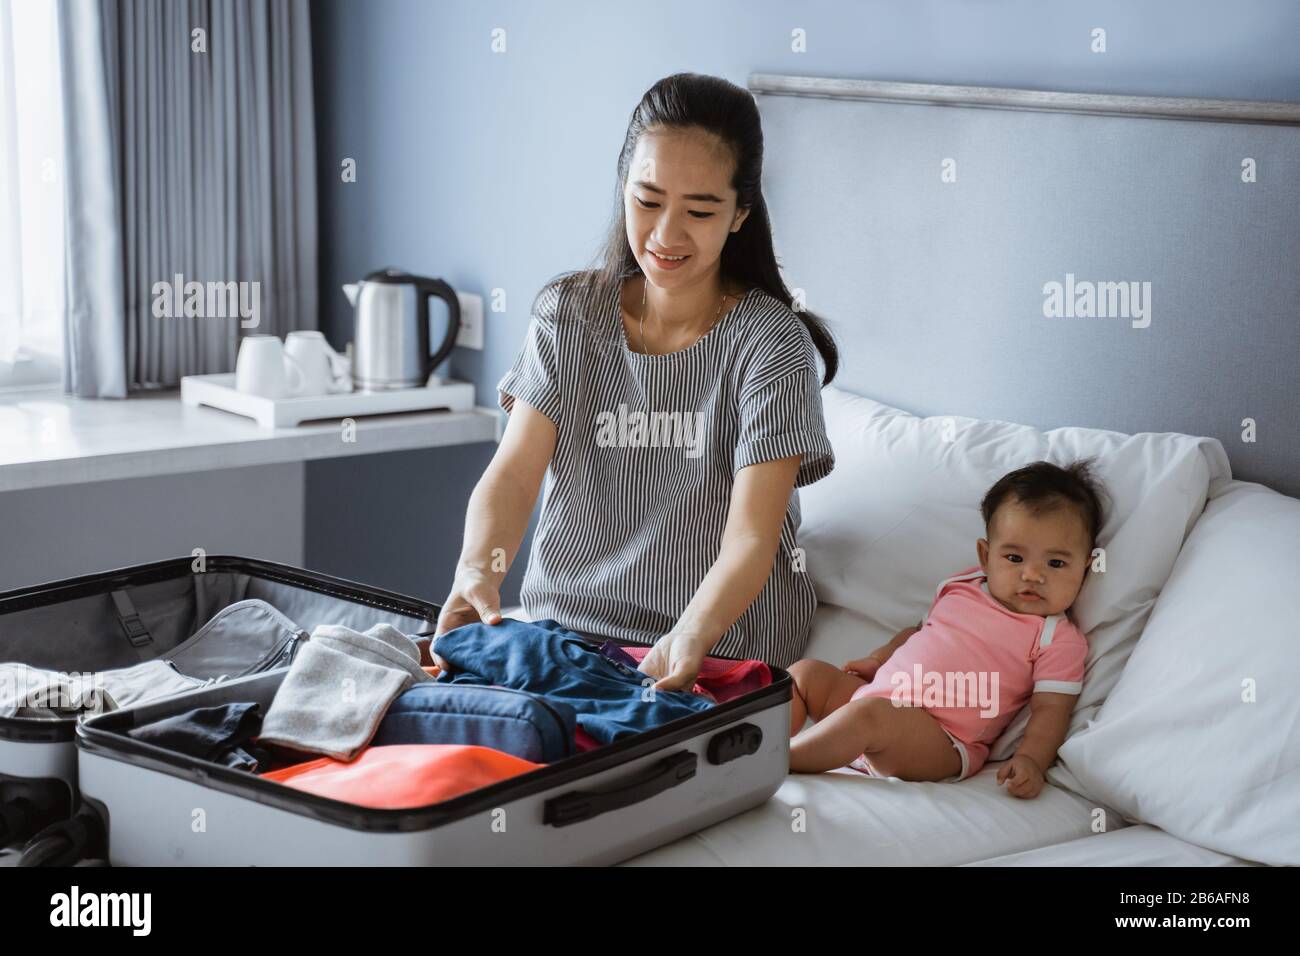 Baby sitzt neben der Mutter und bereitet Kleidung zum Einlegen in den Koffer vor Stockfoto